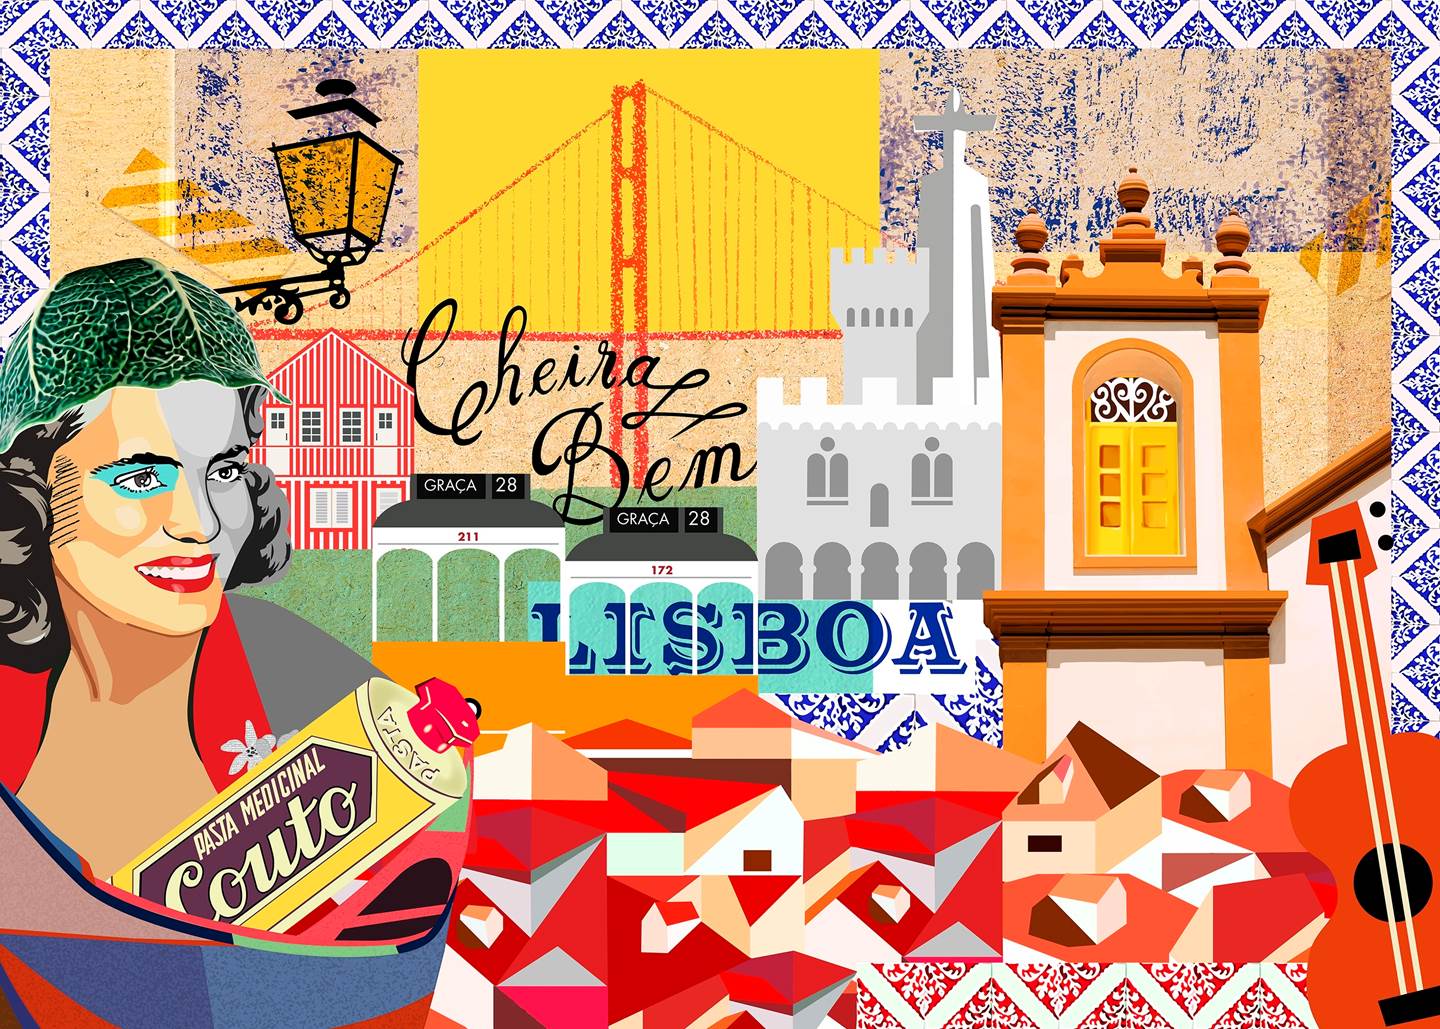 Tela "Cheira a Lisboa", original Resumen Collage Dibujo e Ilustración de Maria João Faustino